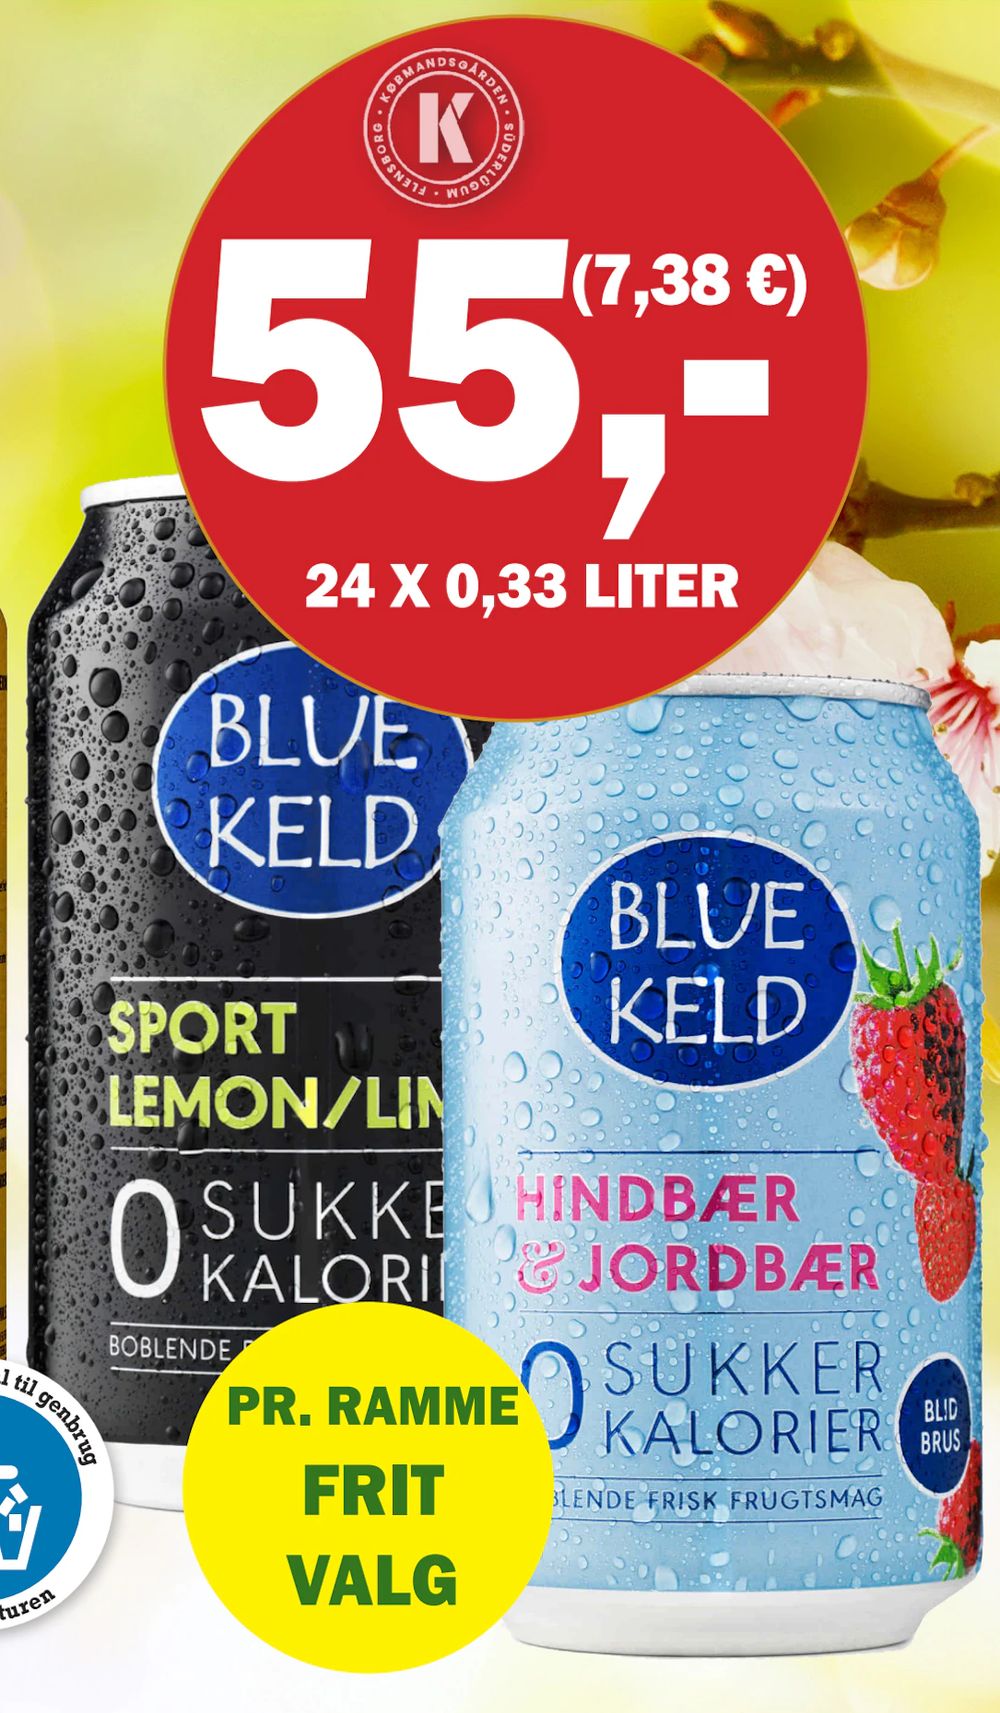 Tilbud på Blue Keld fra Købmandsgården til 55 kr.